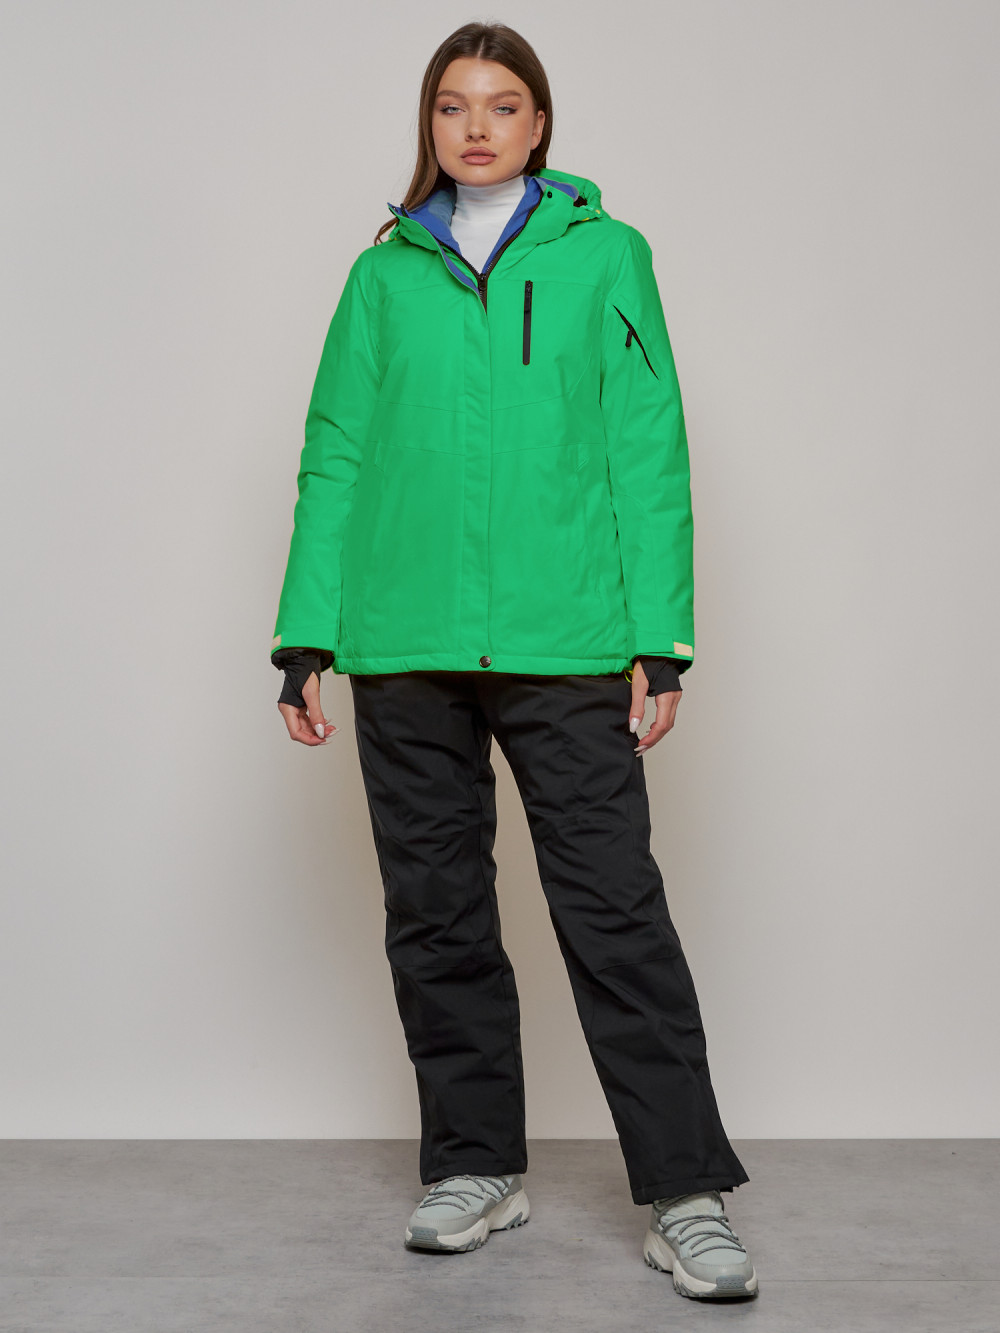 Горнолыжный костюм женский зимний MTFORCE 005Z, 44, зеленый/черный